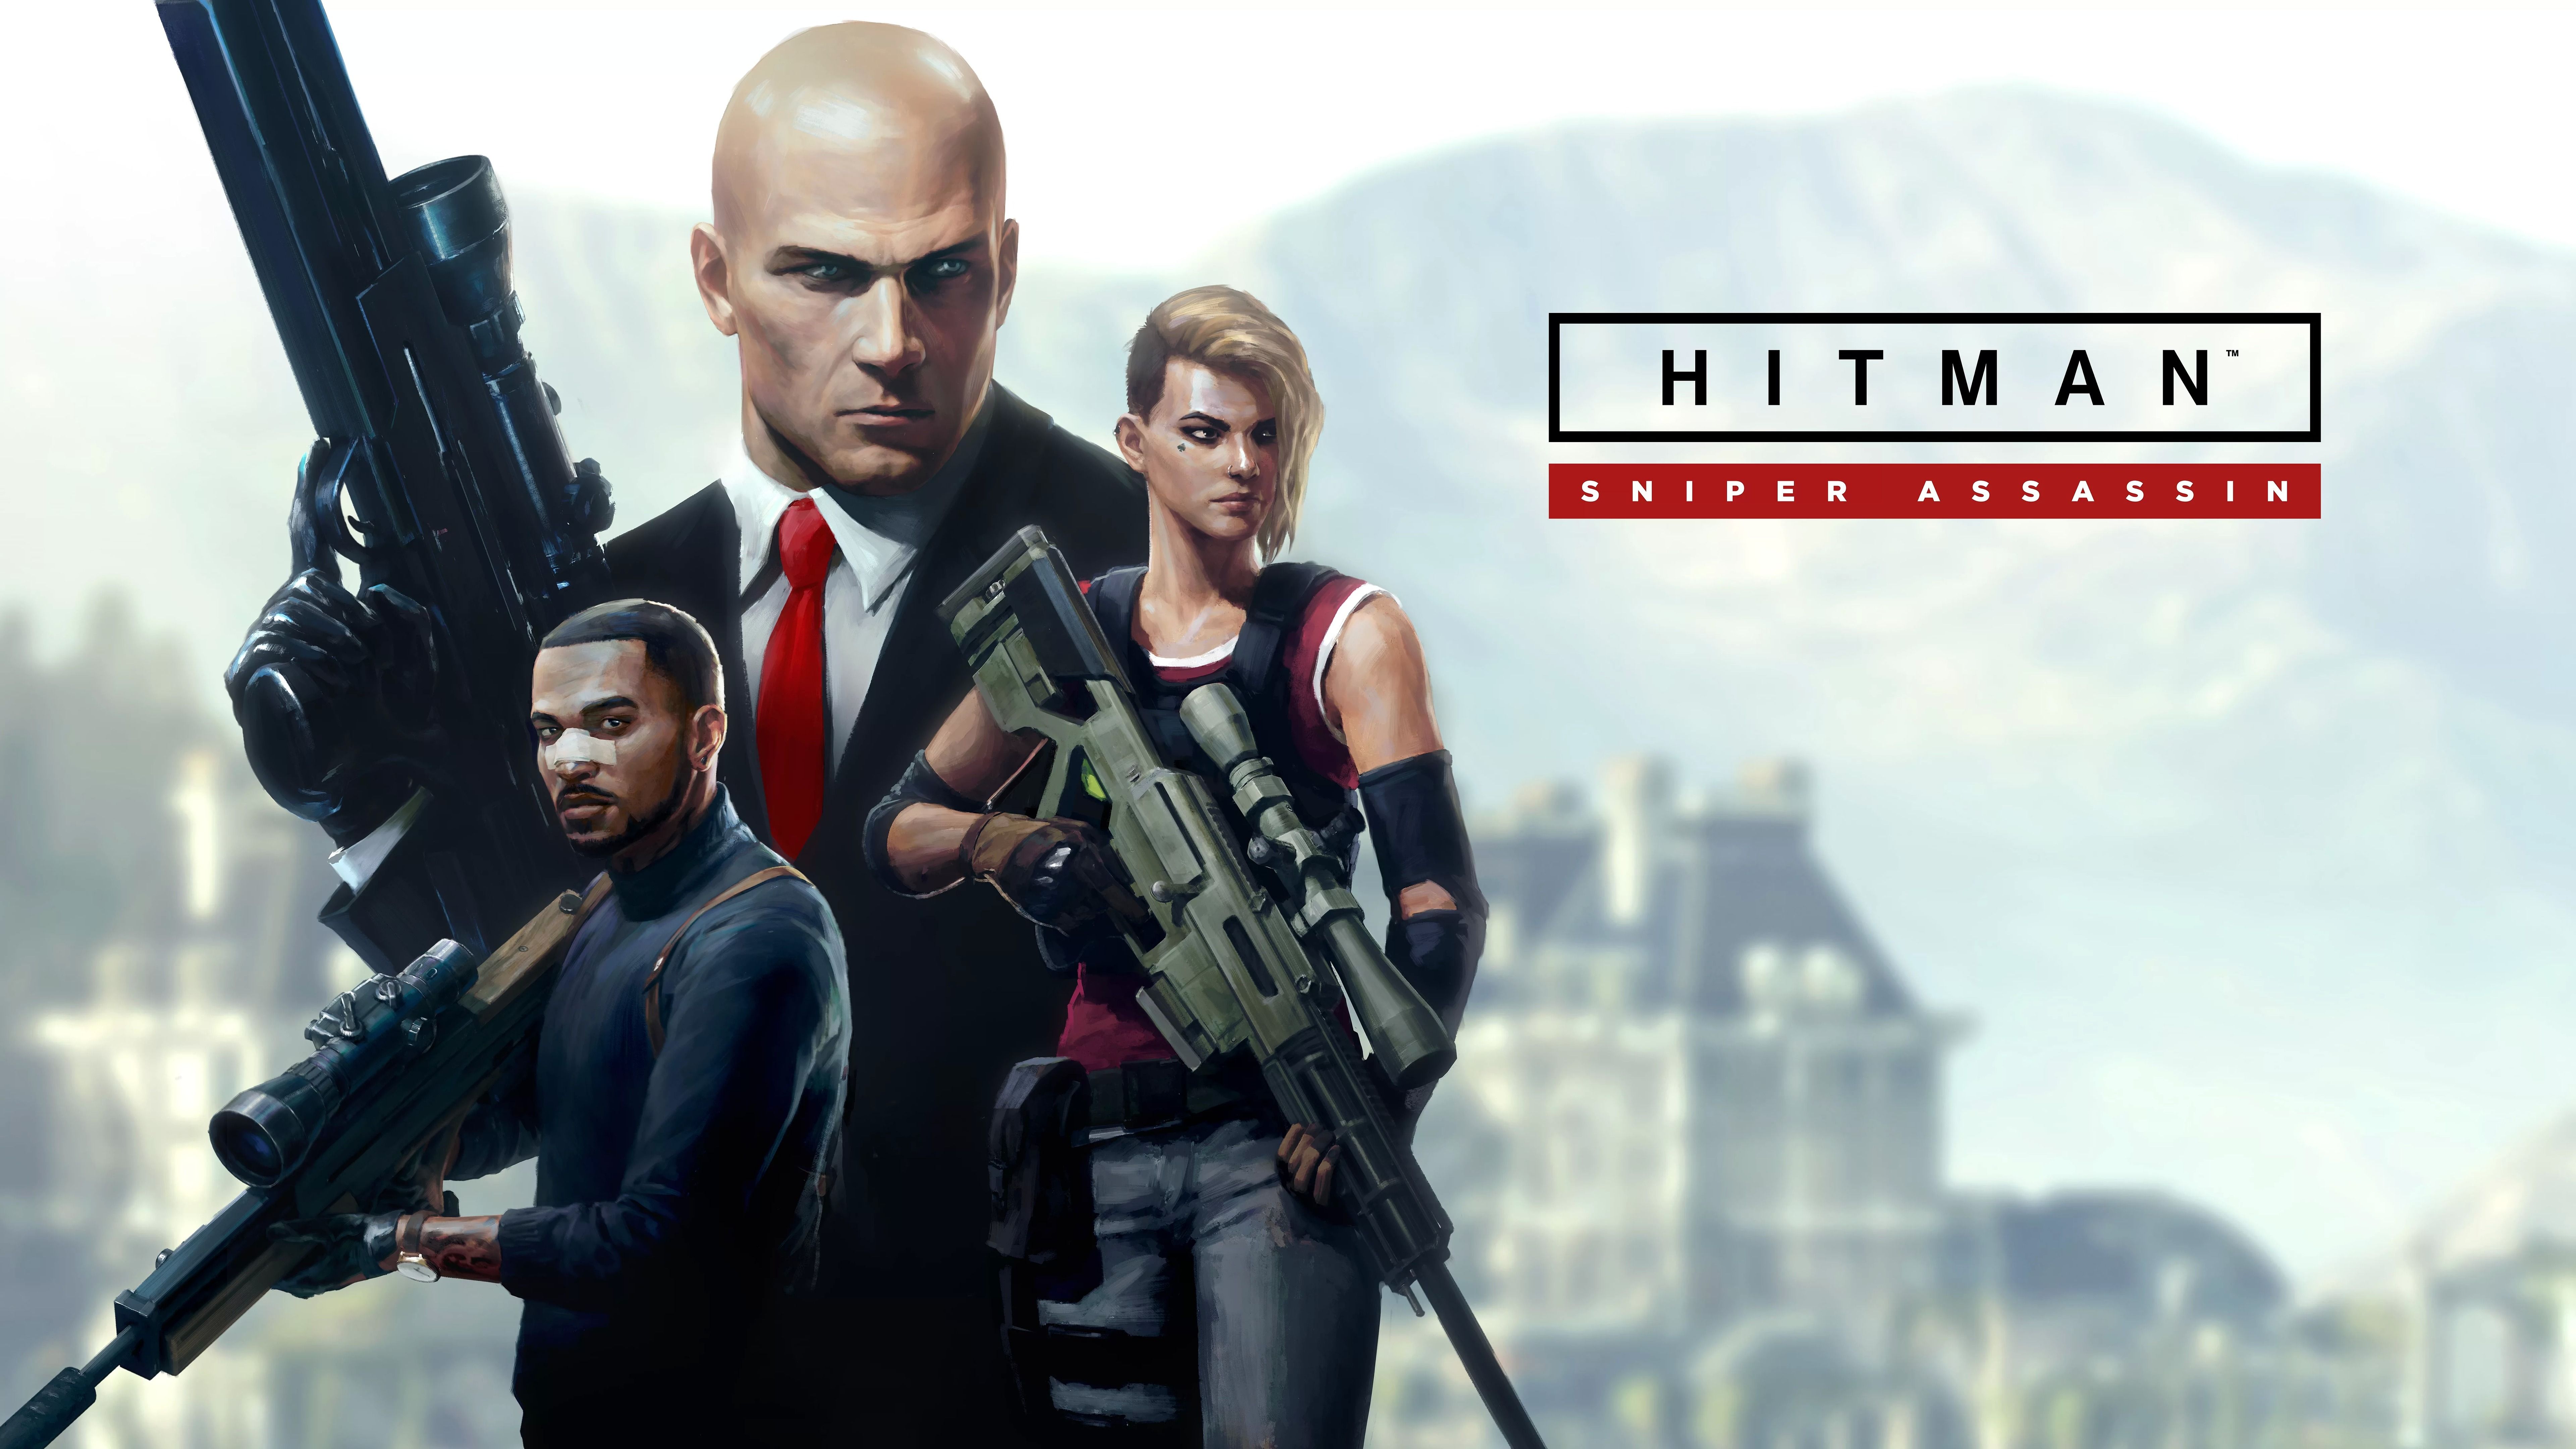 Hitman Sniper Assassin Mode , HD Wallpaper & Backgrounds